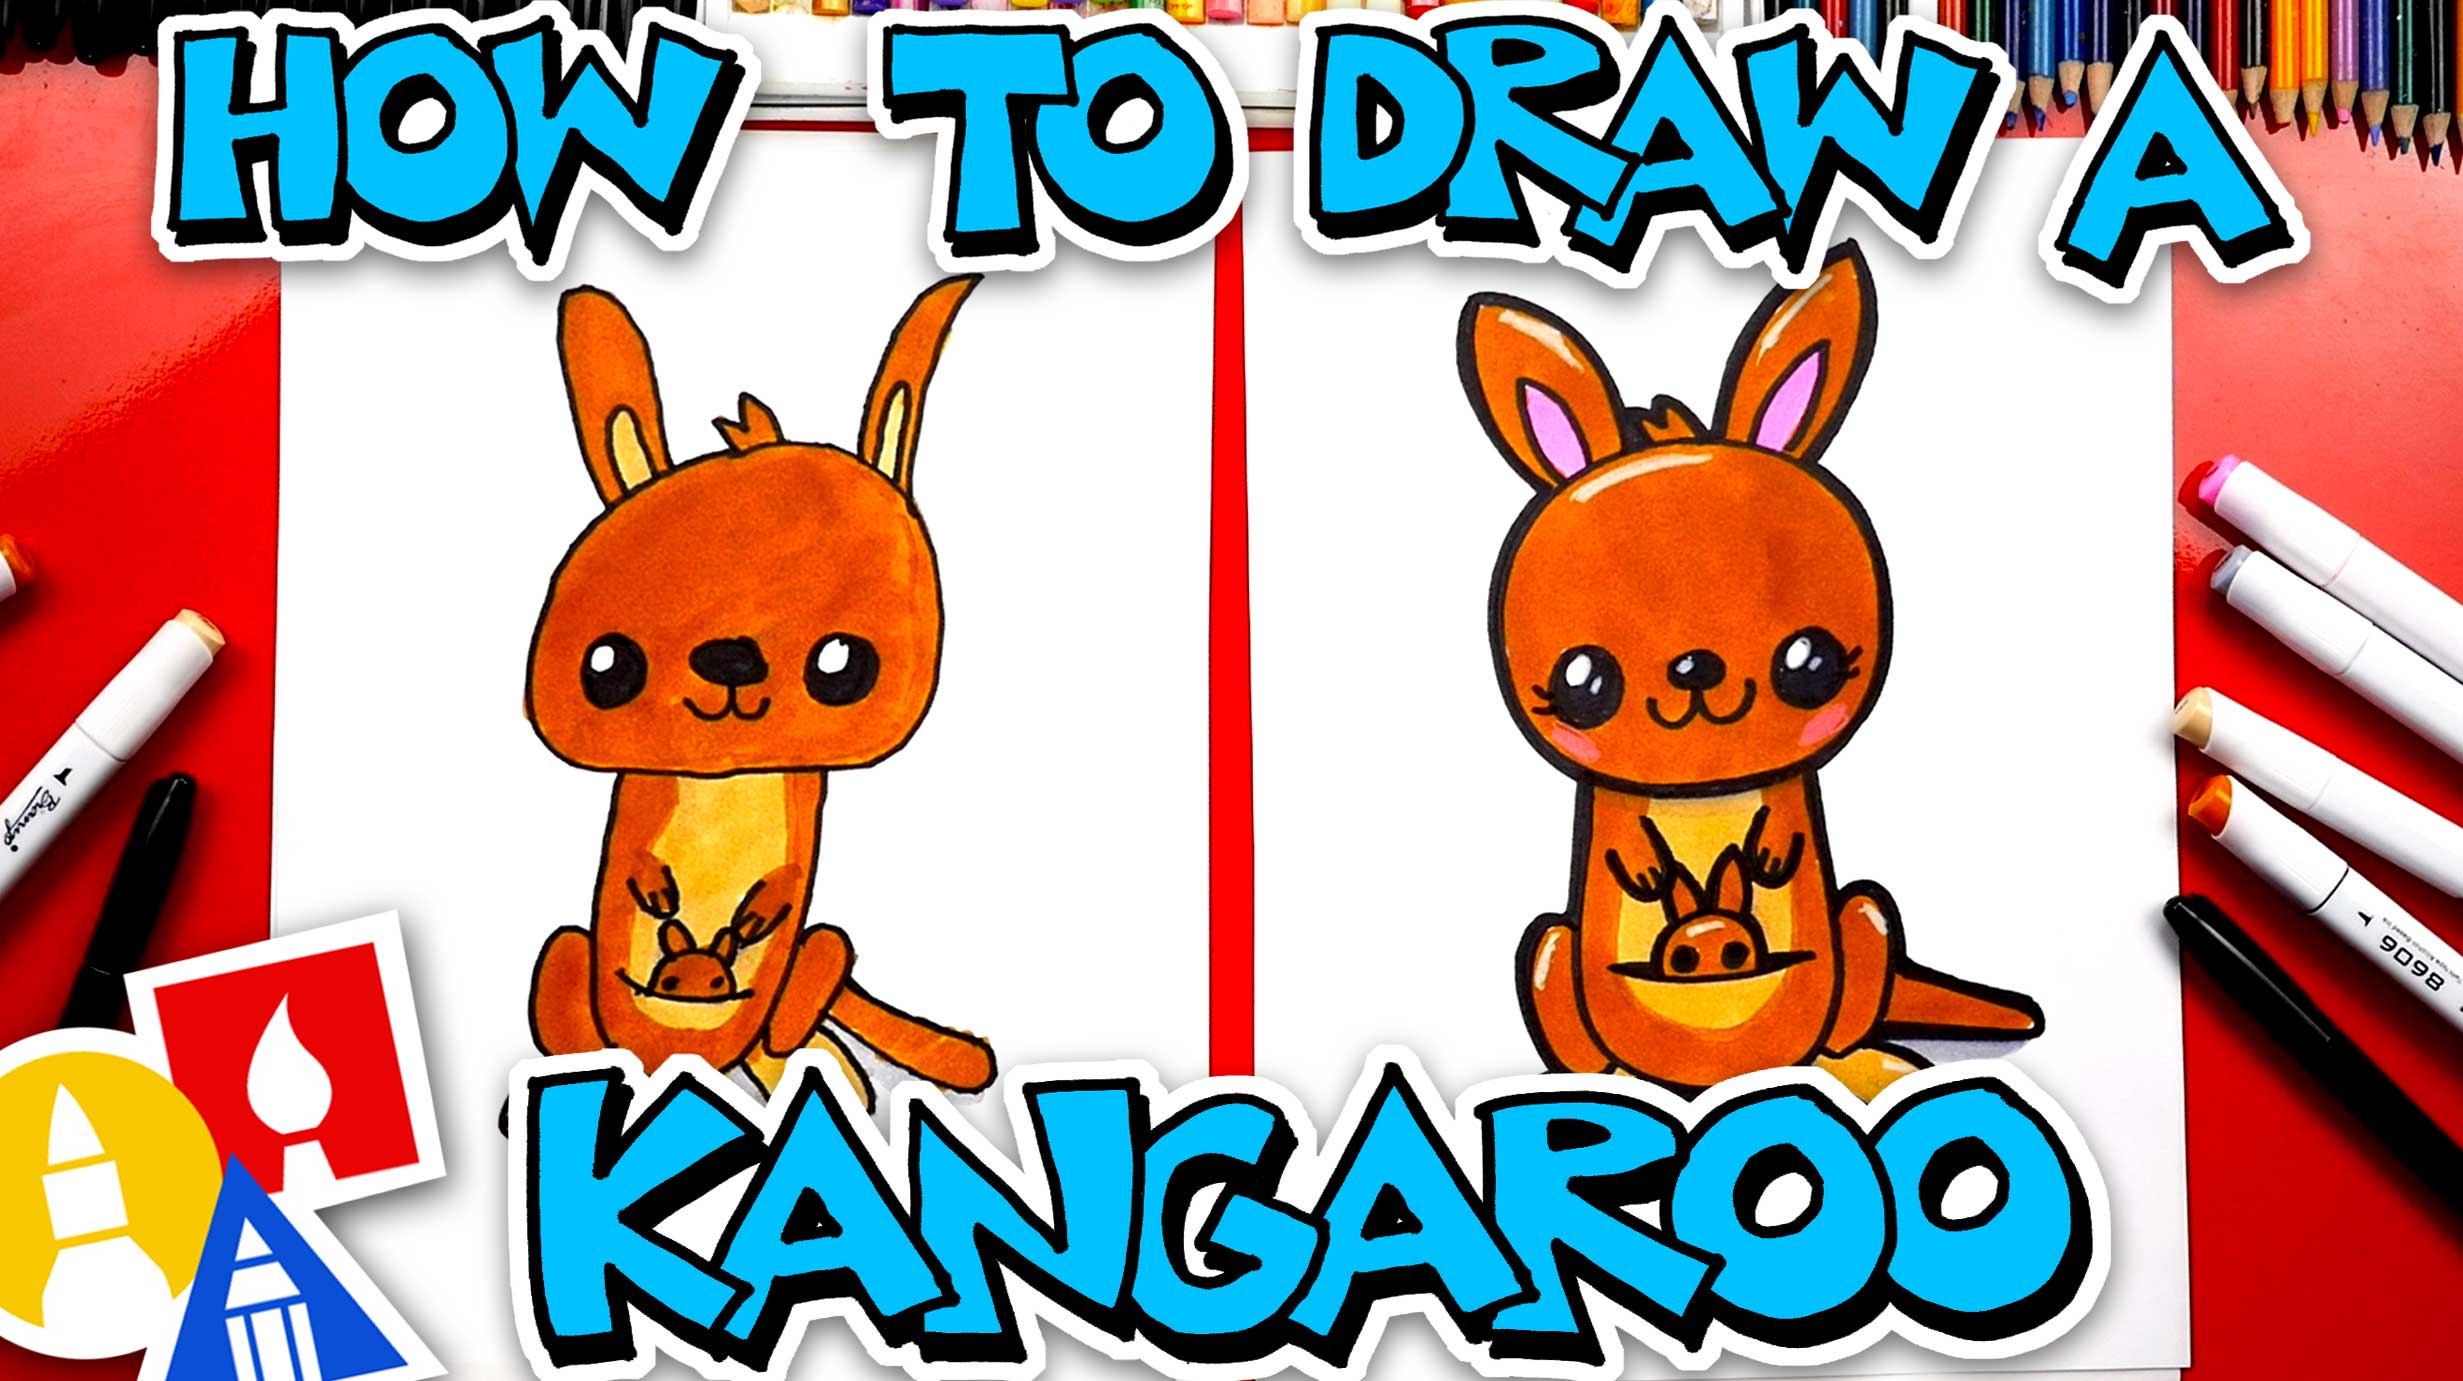 How To Draw A Cartoon Kangaroo - Art For Kids Hub